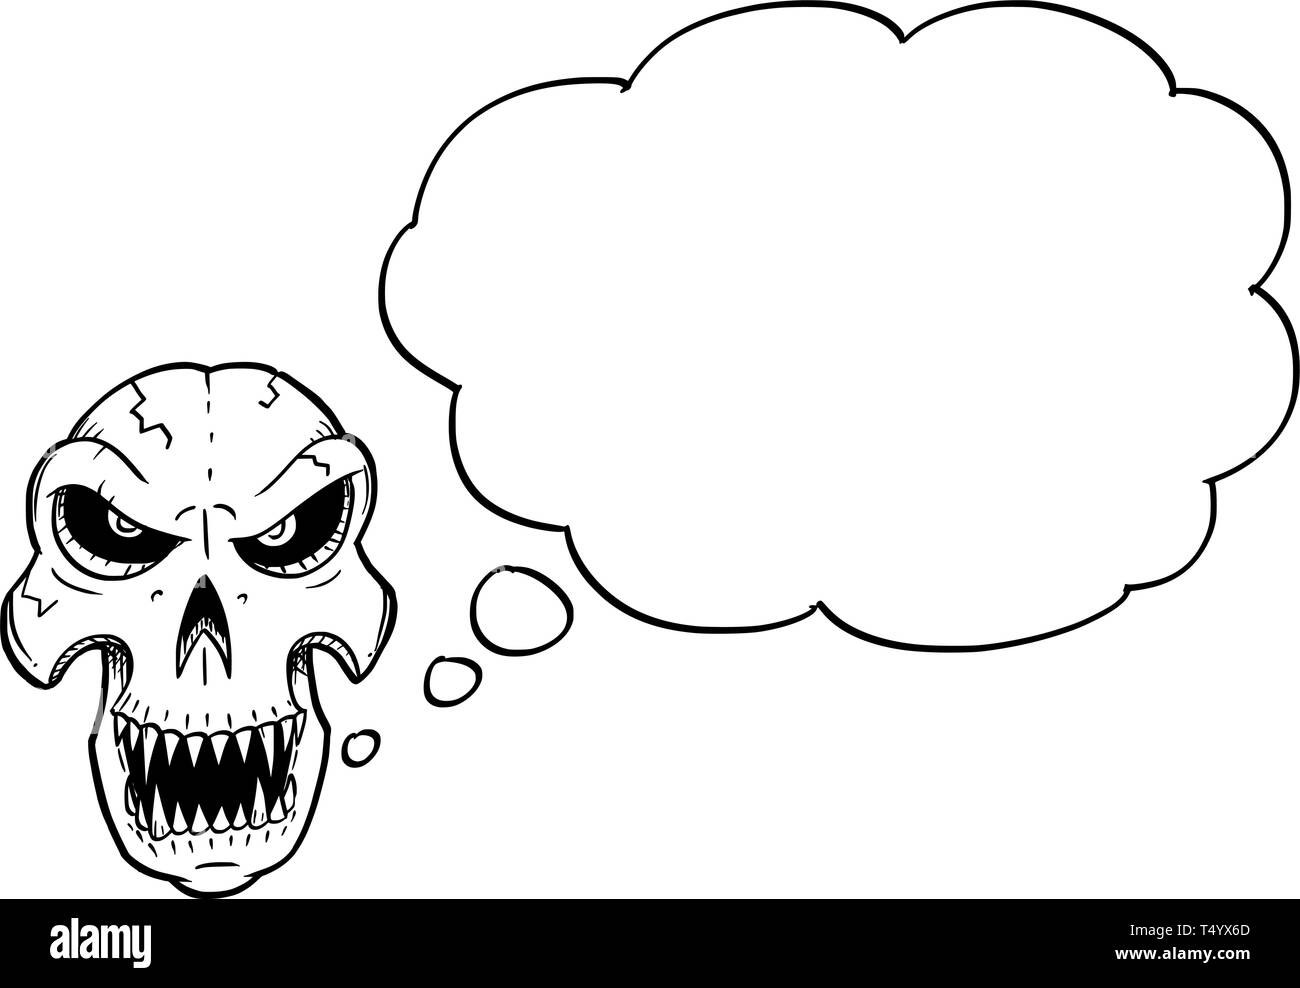 Cartoon Zeichnung konzeptuelle Darstellung von wütenden Monster Schädel mit scharfen Zähnen auf der Suche front mit leeren Sprache oder Text oder Seifenblase Ballon. Stock Vektor